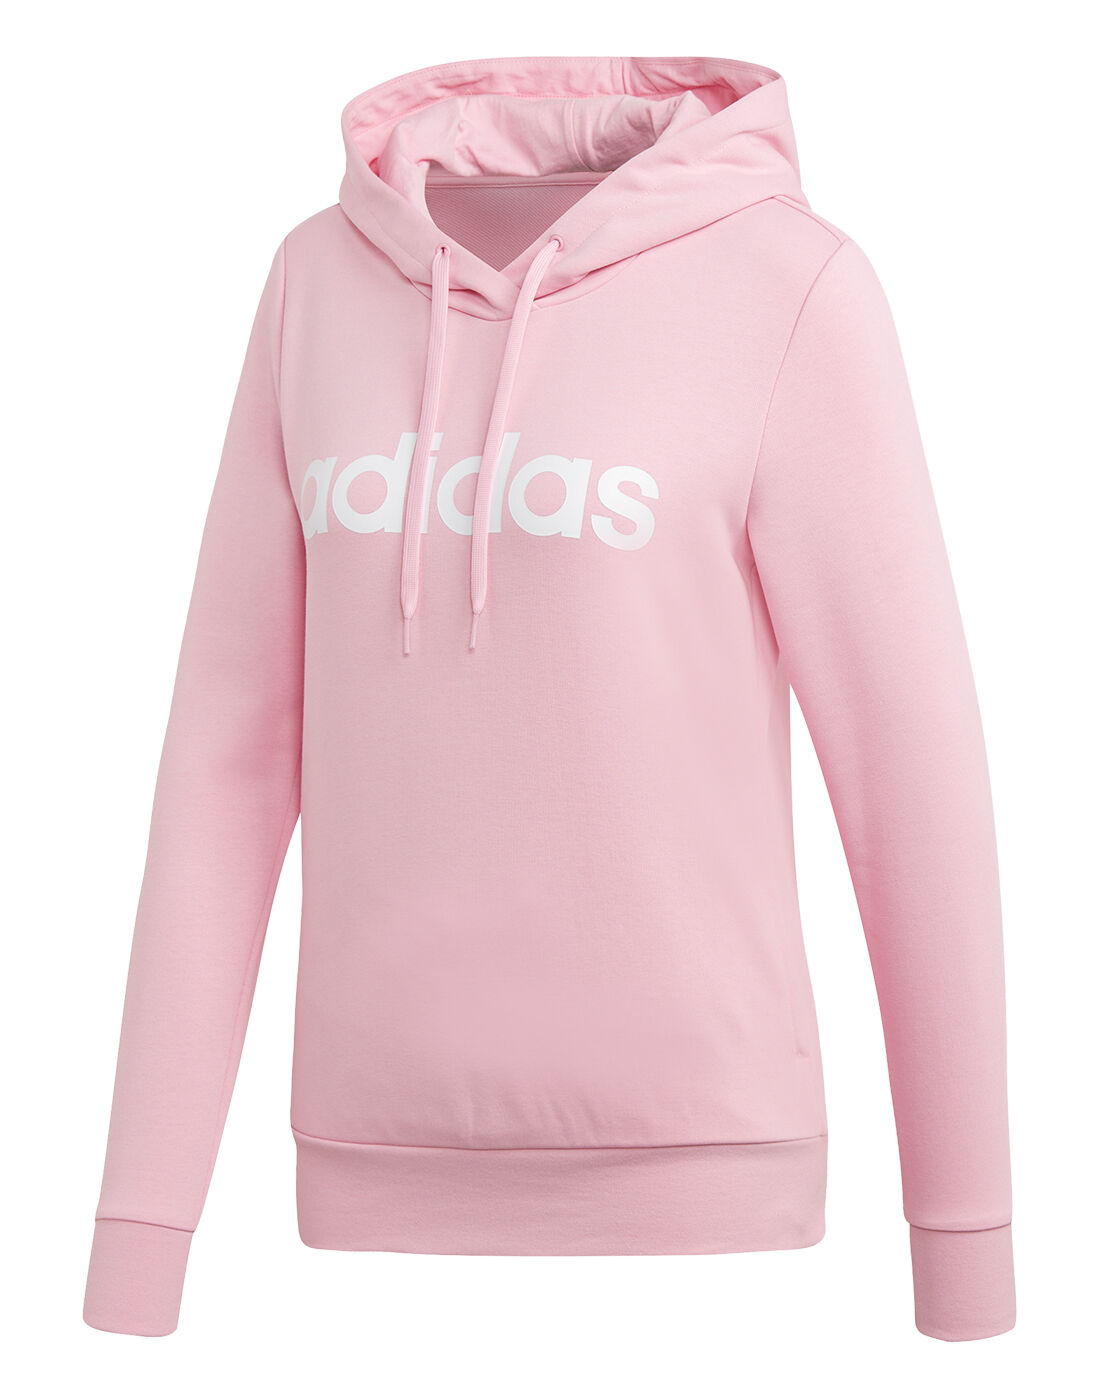 adidas hoodie womens pink